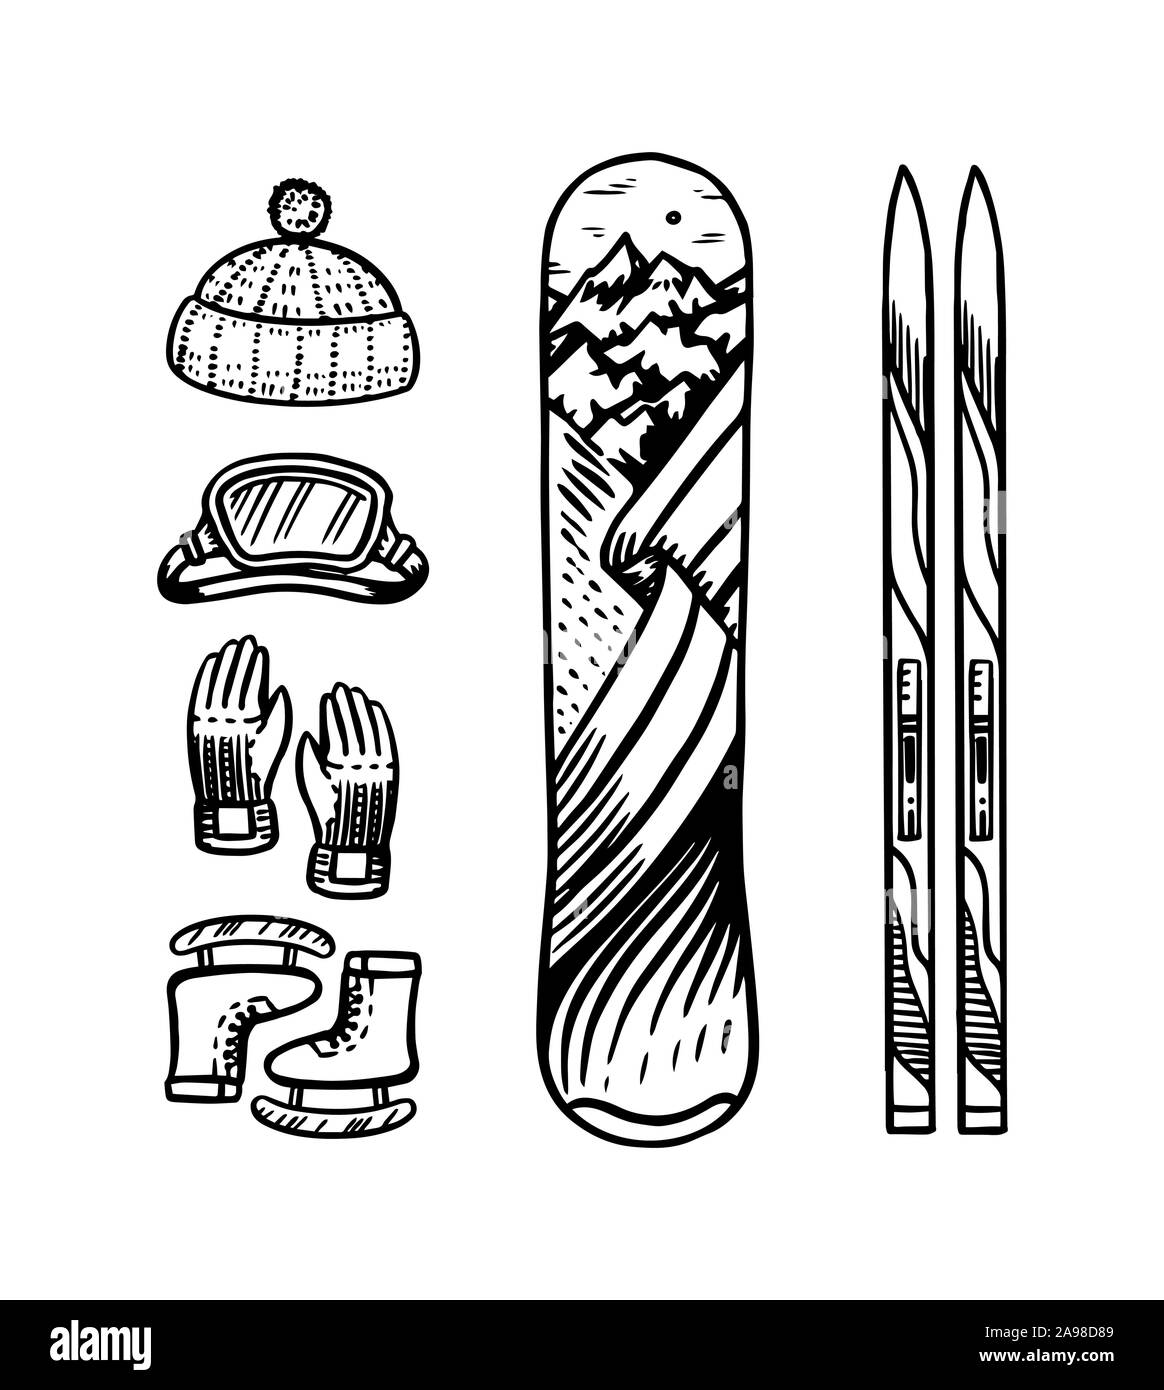 In stile vintage di snowboard e sci. In inverno abiti caldi. Elementi  attivi per gli sport di montagna. Incisi disegnati a mano retrò profilo  disegna per adesivi o Immagine e Vettoriale 